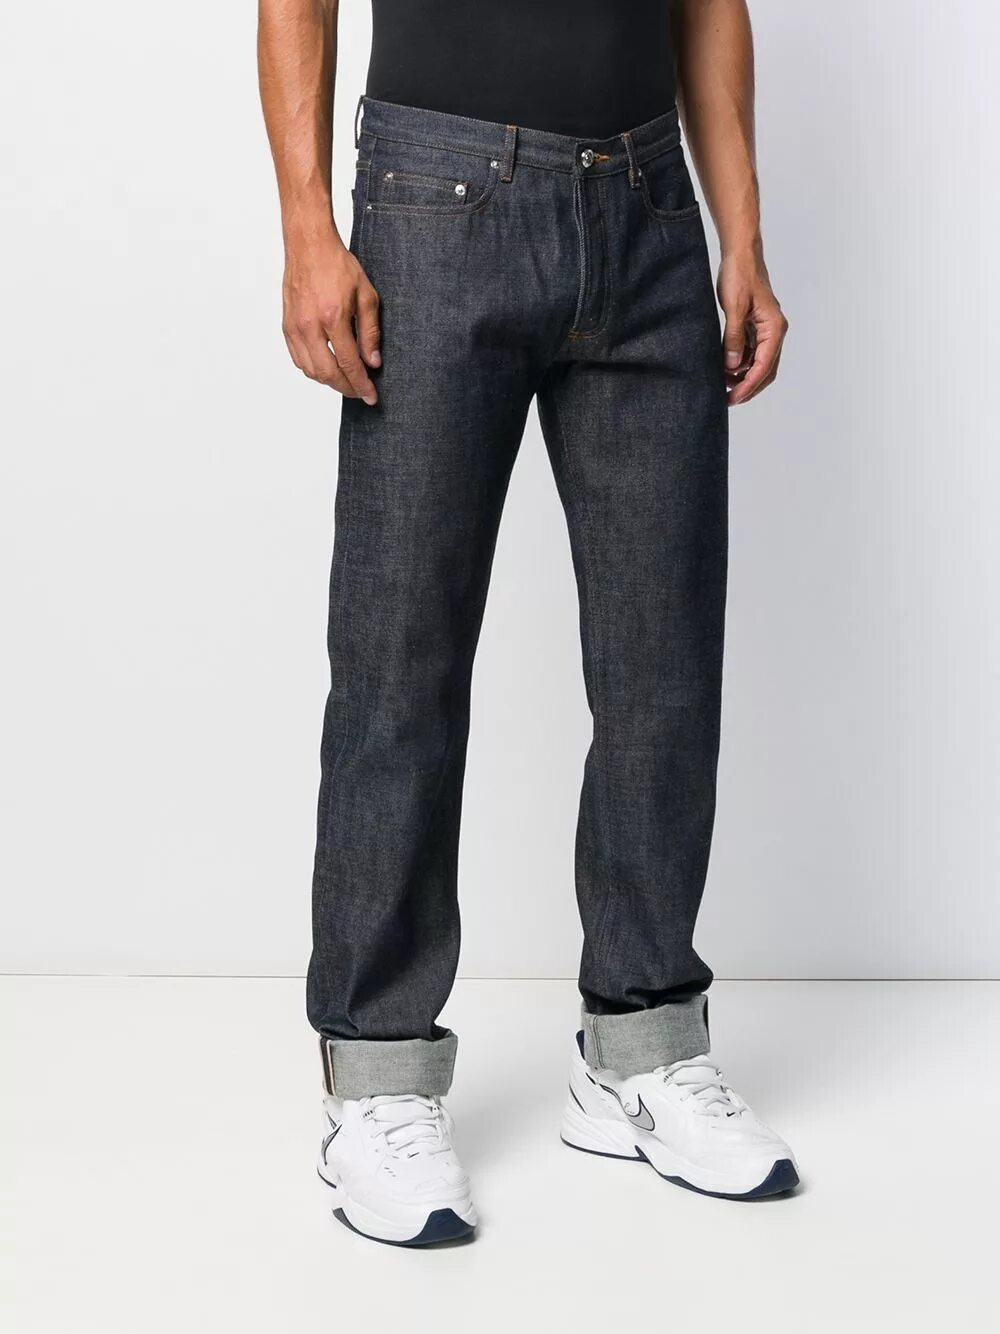 New jeans new jeans speed. Джинсы a p c New Standard. C A джинсы мужские. Нью джинс Нью джинс. Джинсы c23007.